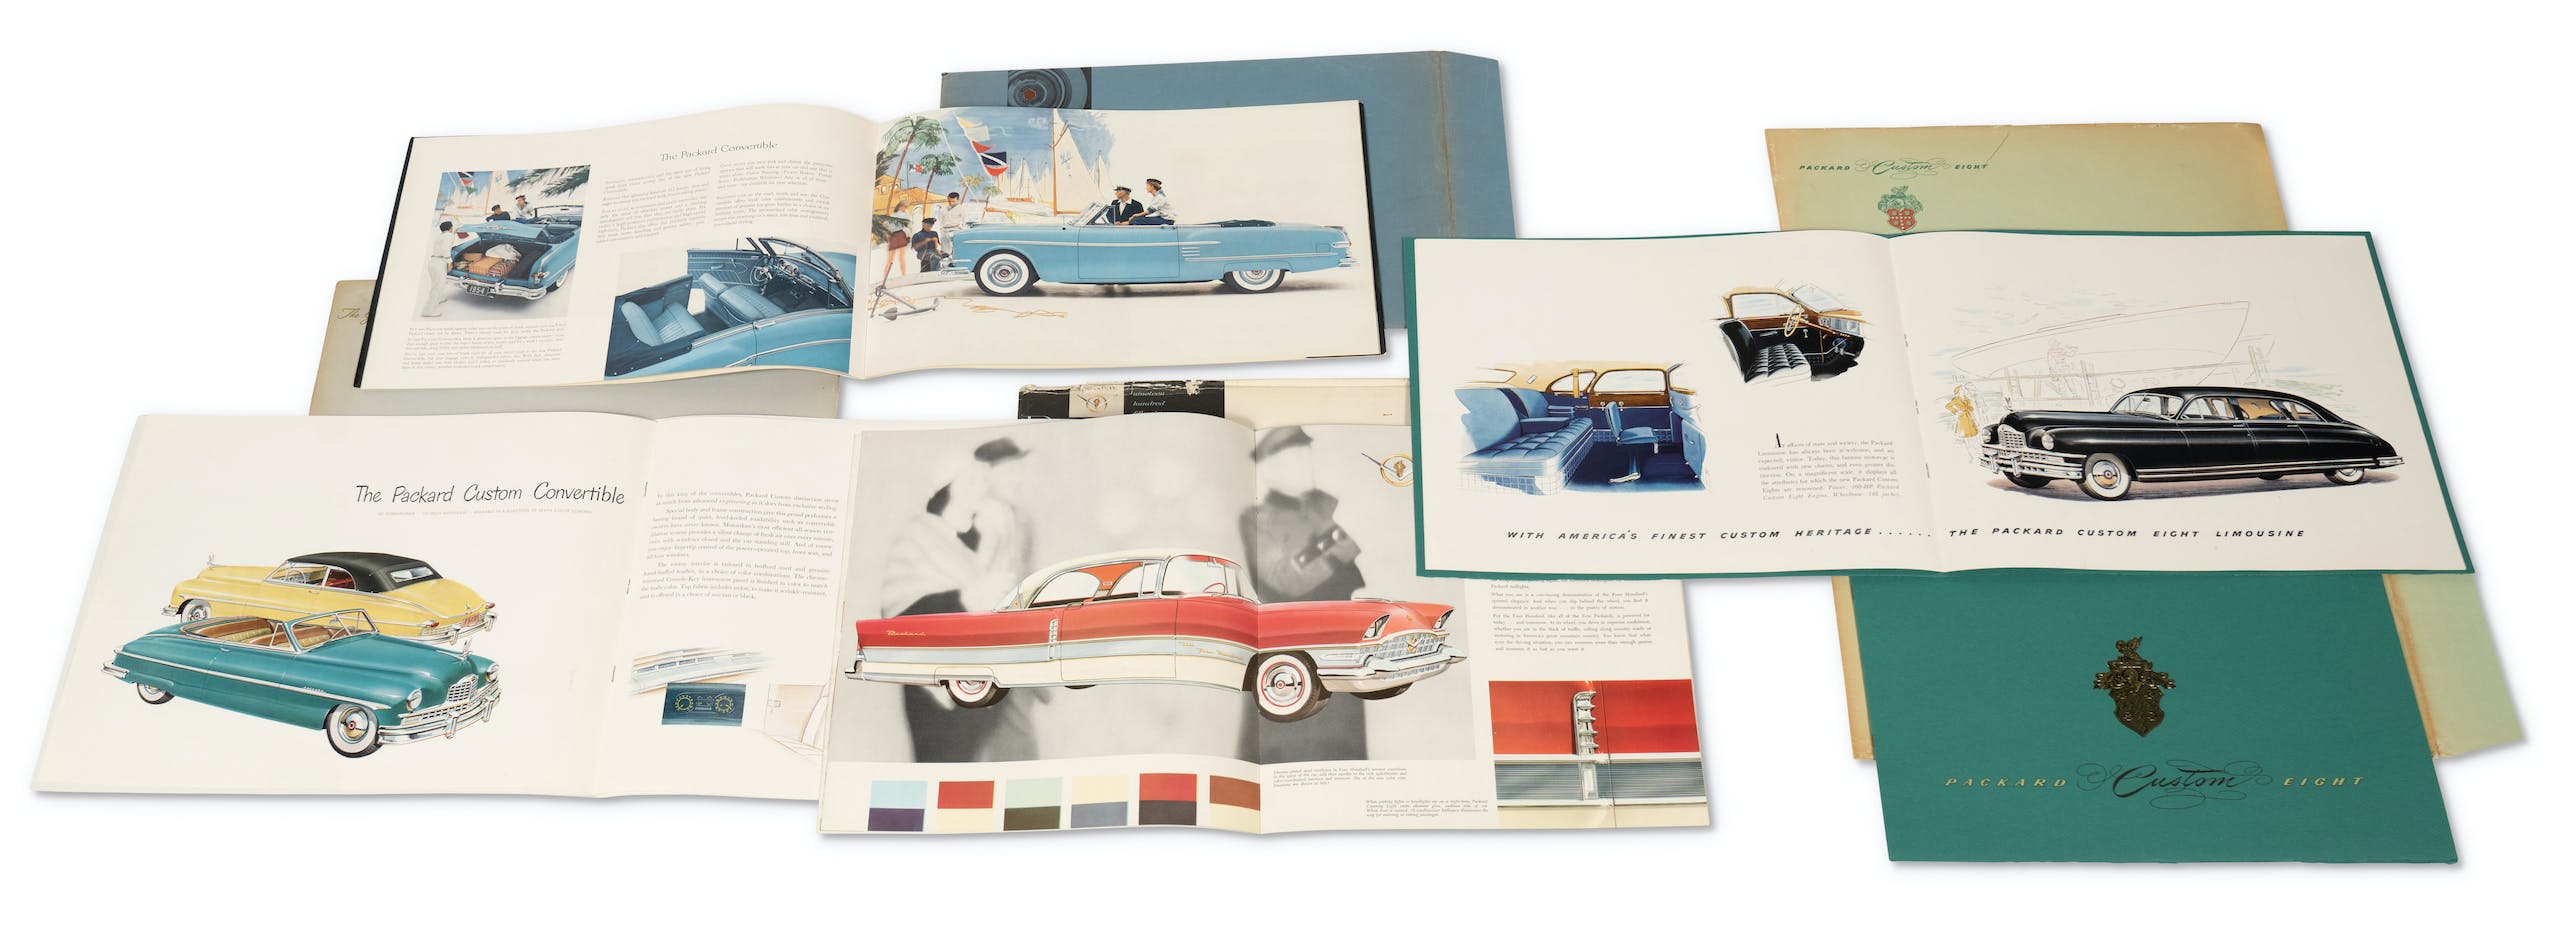 Packard sales brochure